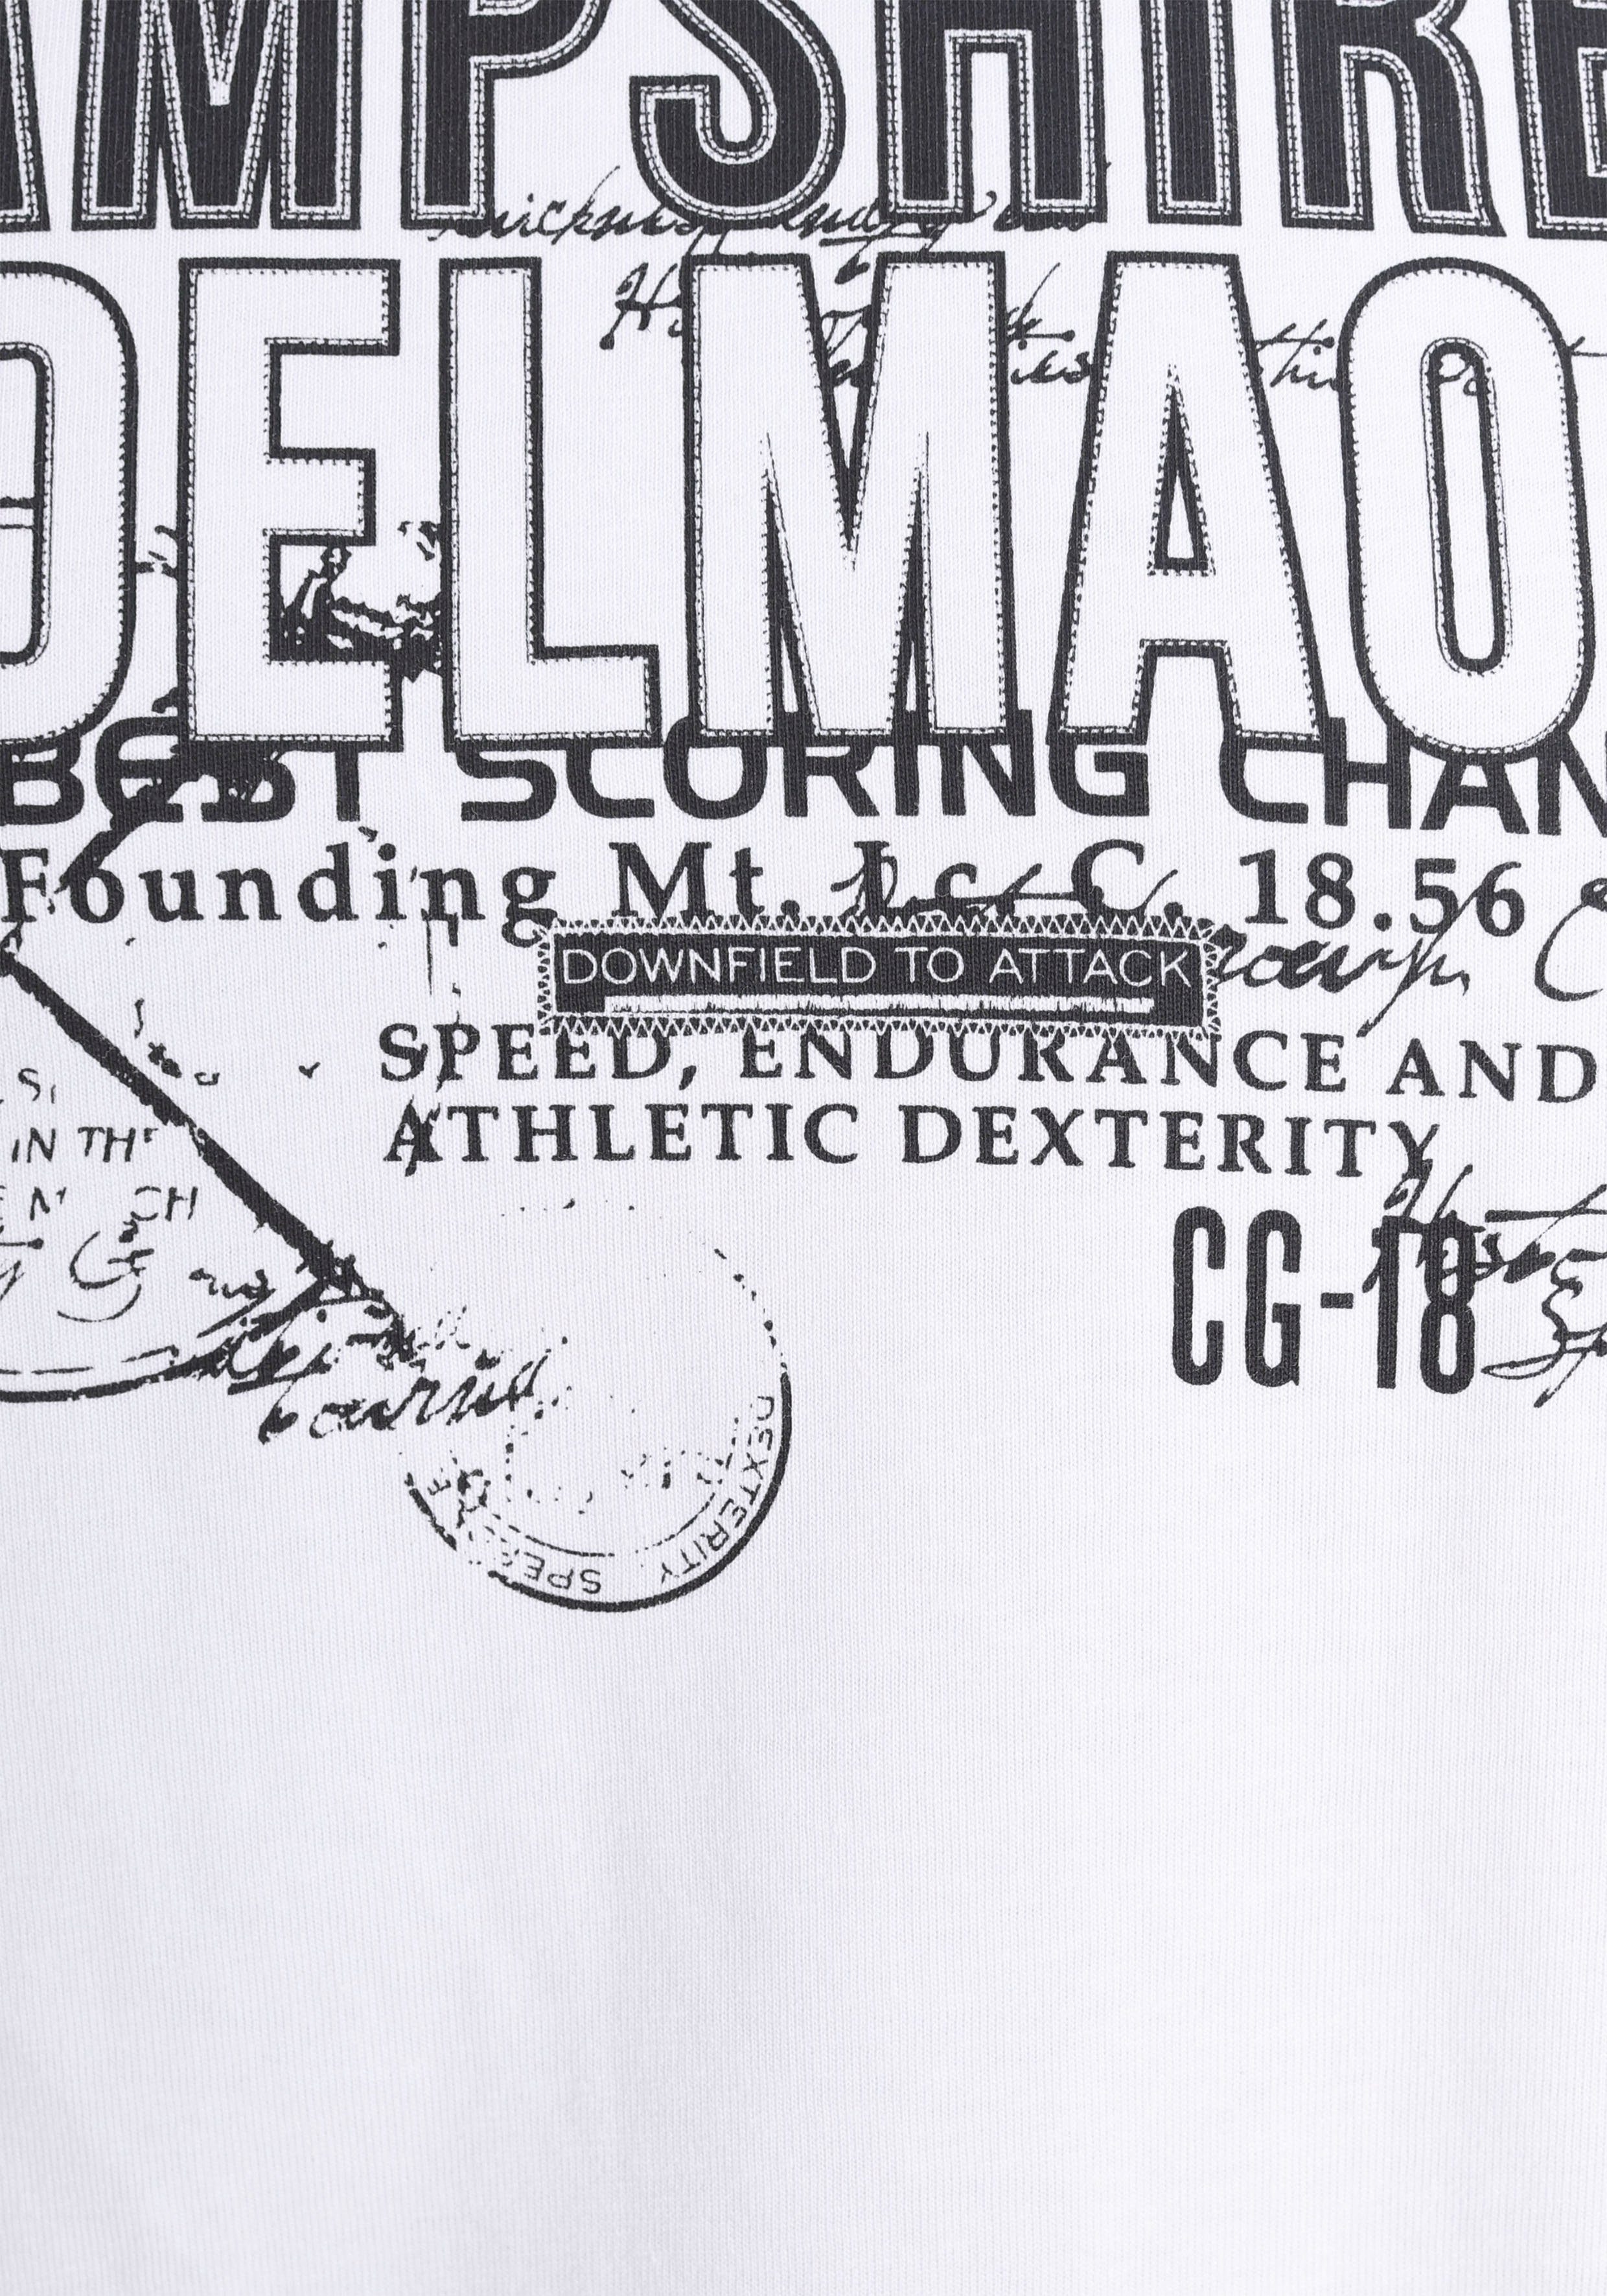 DELMAO T-Shirt mit Brustprint und MARKE! kontrastfarbigen Nähten-NEUE